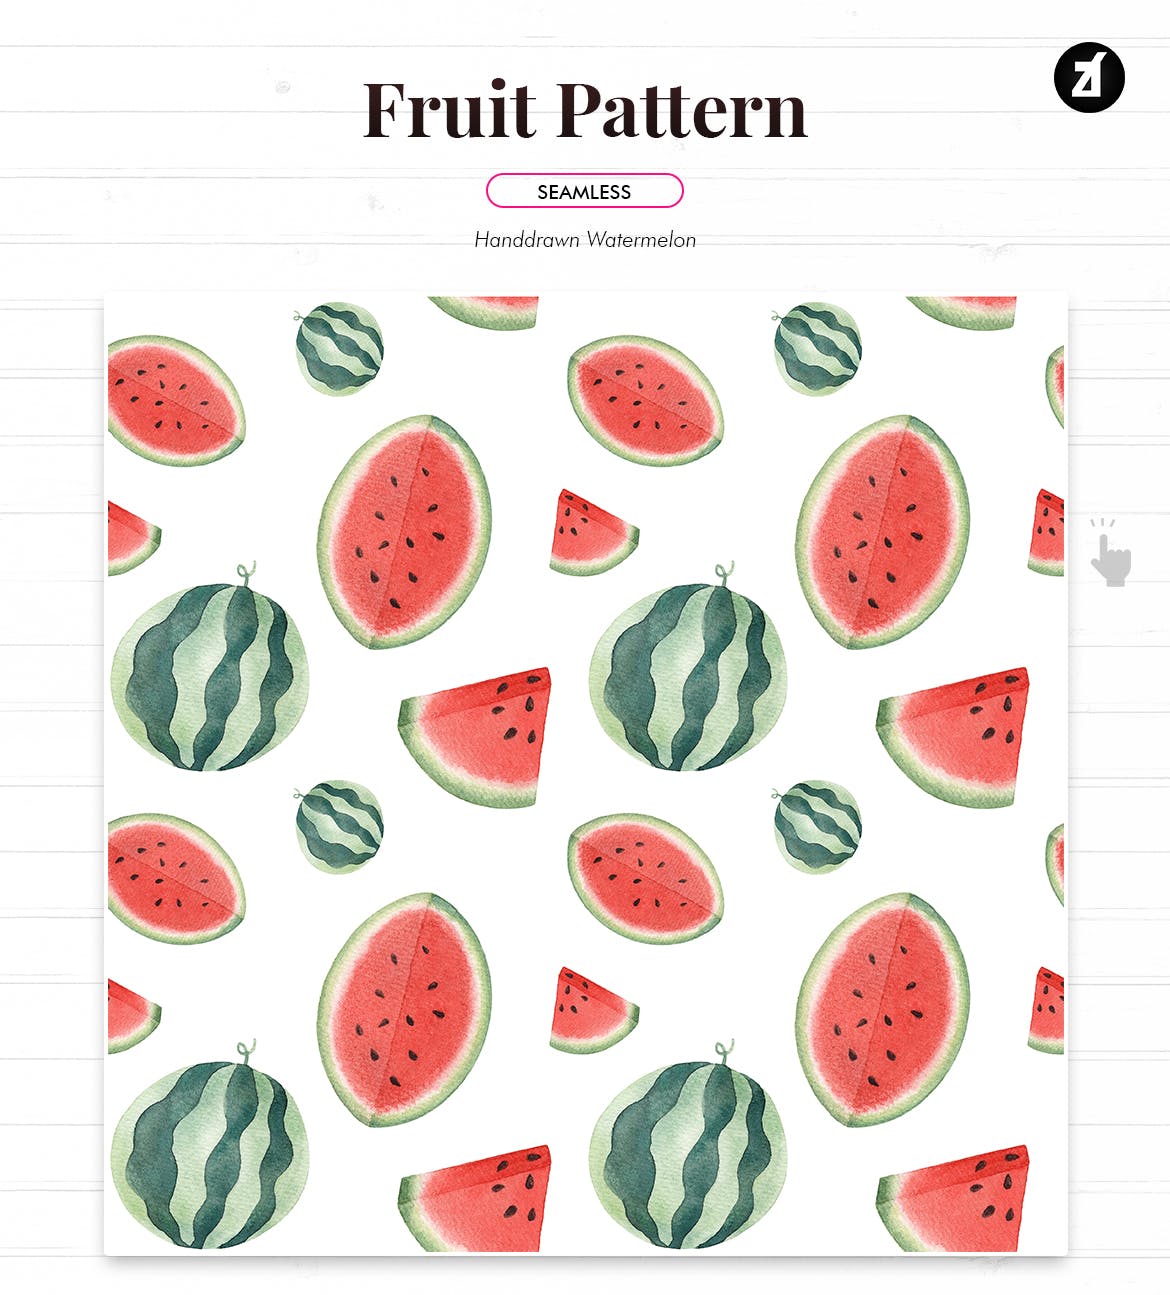 水彩手绘水果图案纹样背景素材 Fruits pattern hand-drawn watercolor illustration插图(6)